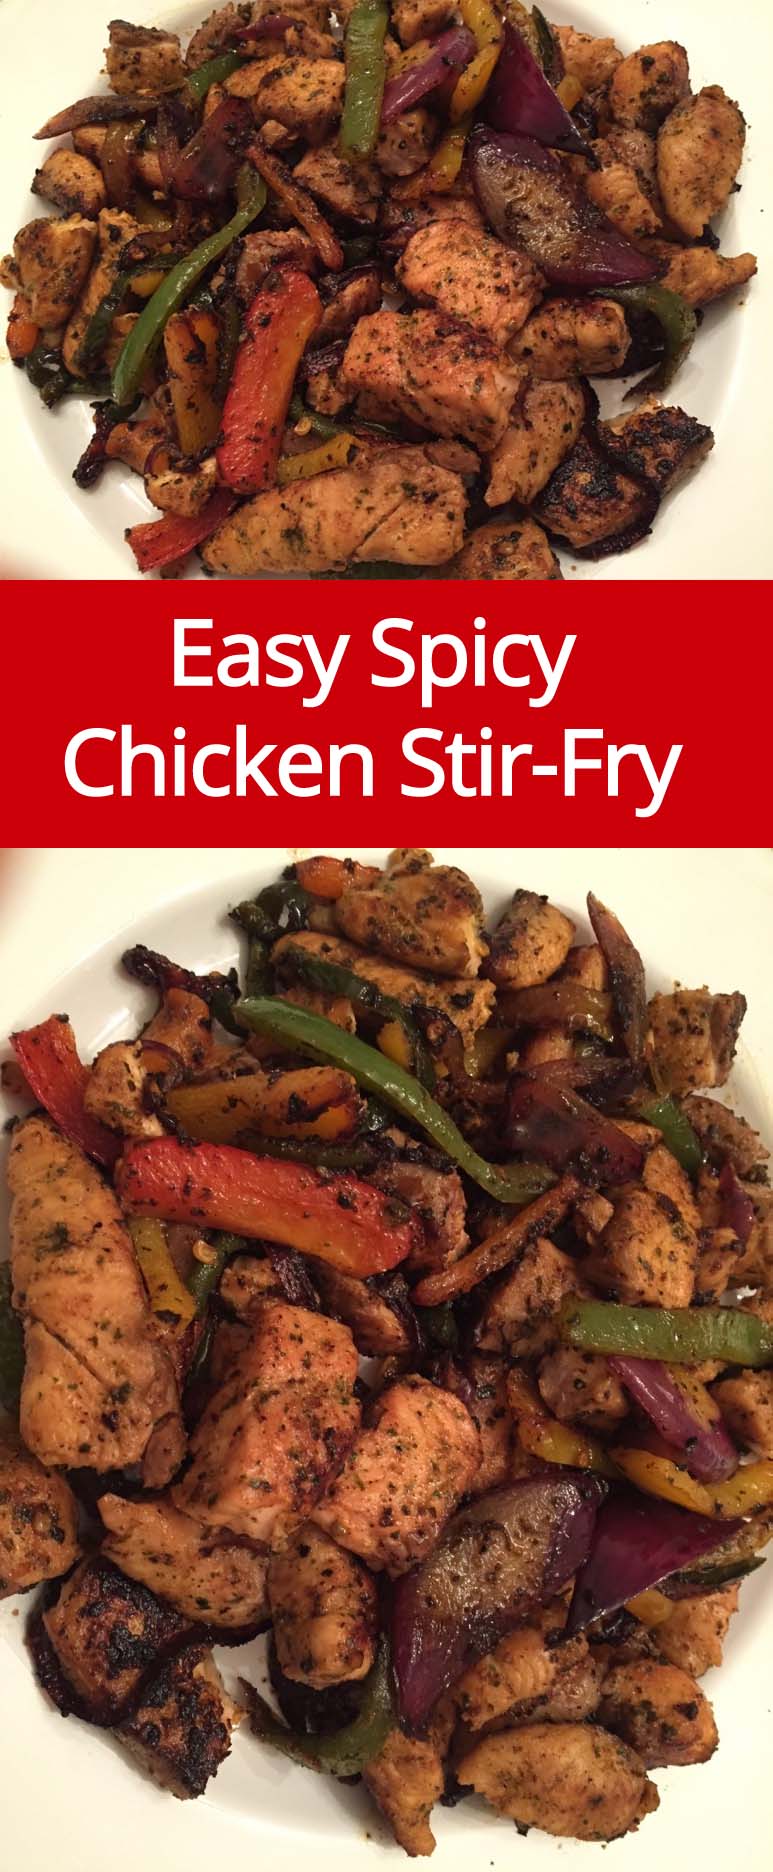 Easy Spicy Chicken Stir-Fry Recipe | MelanieCooks.com